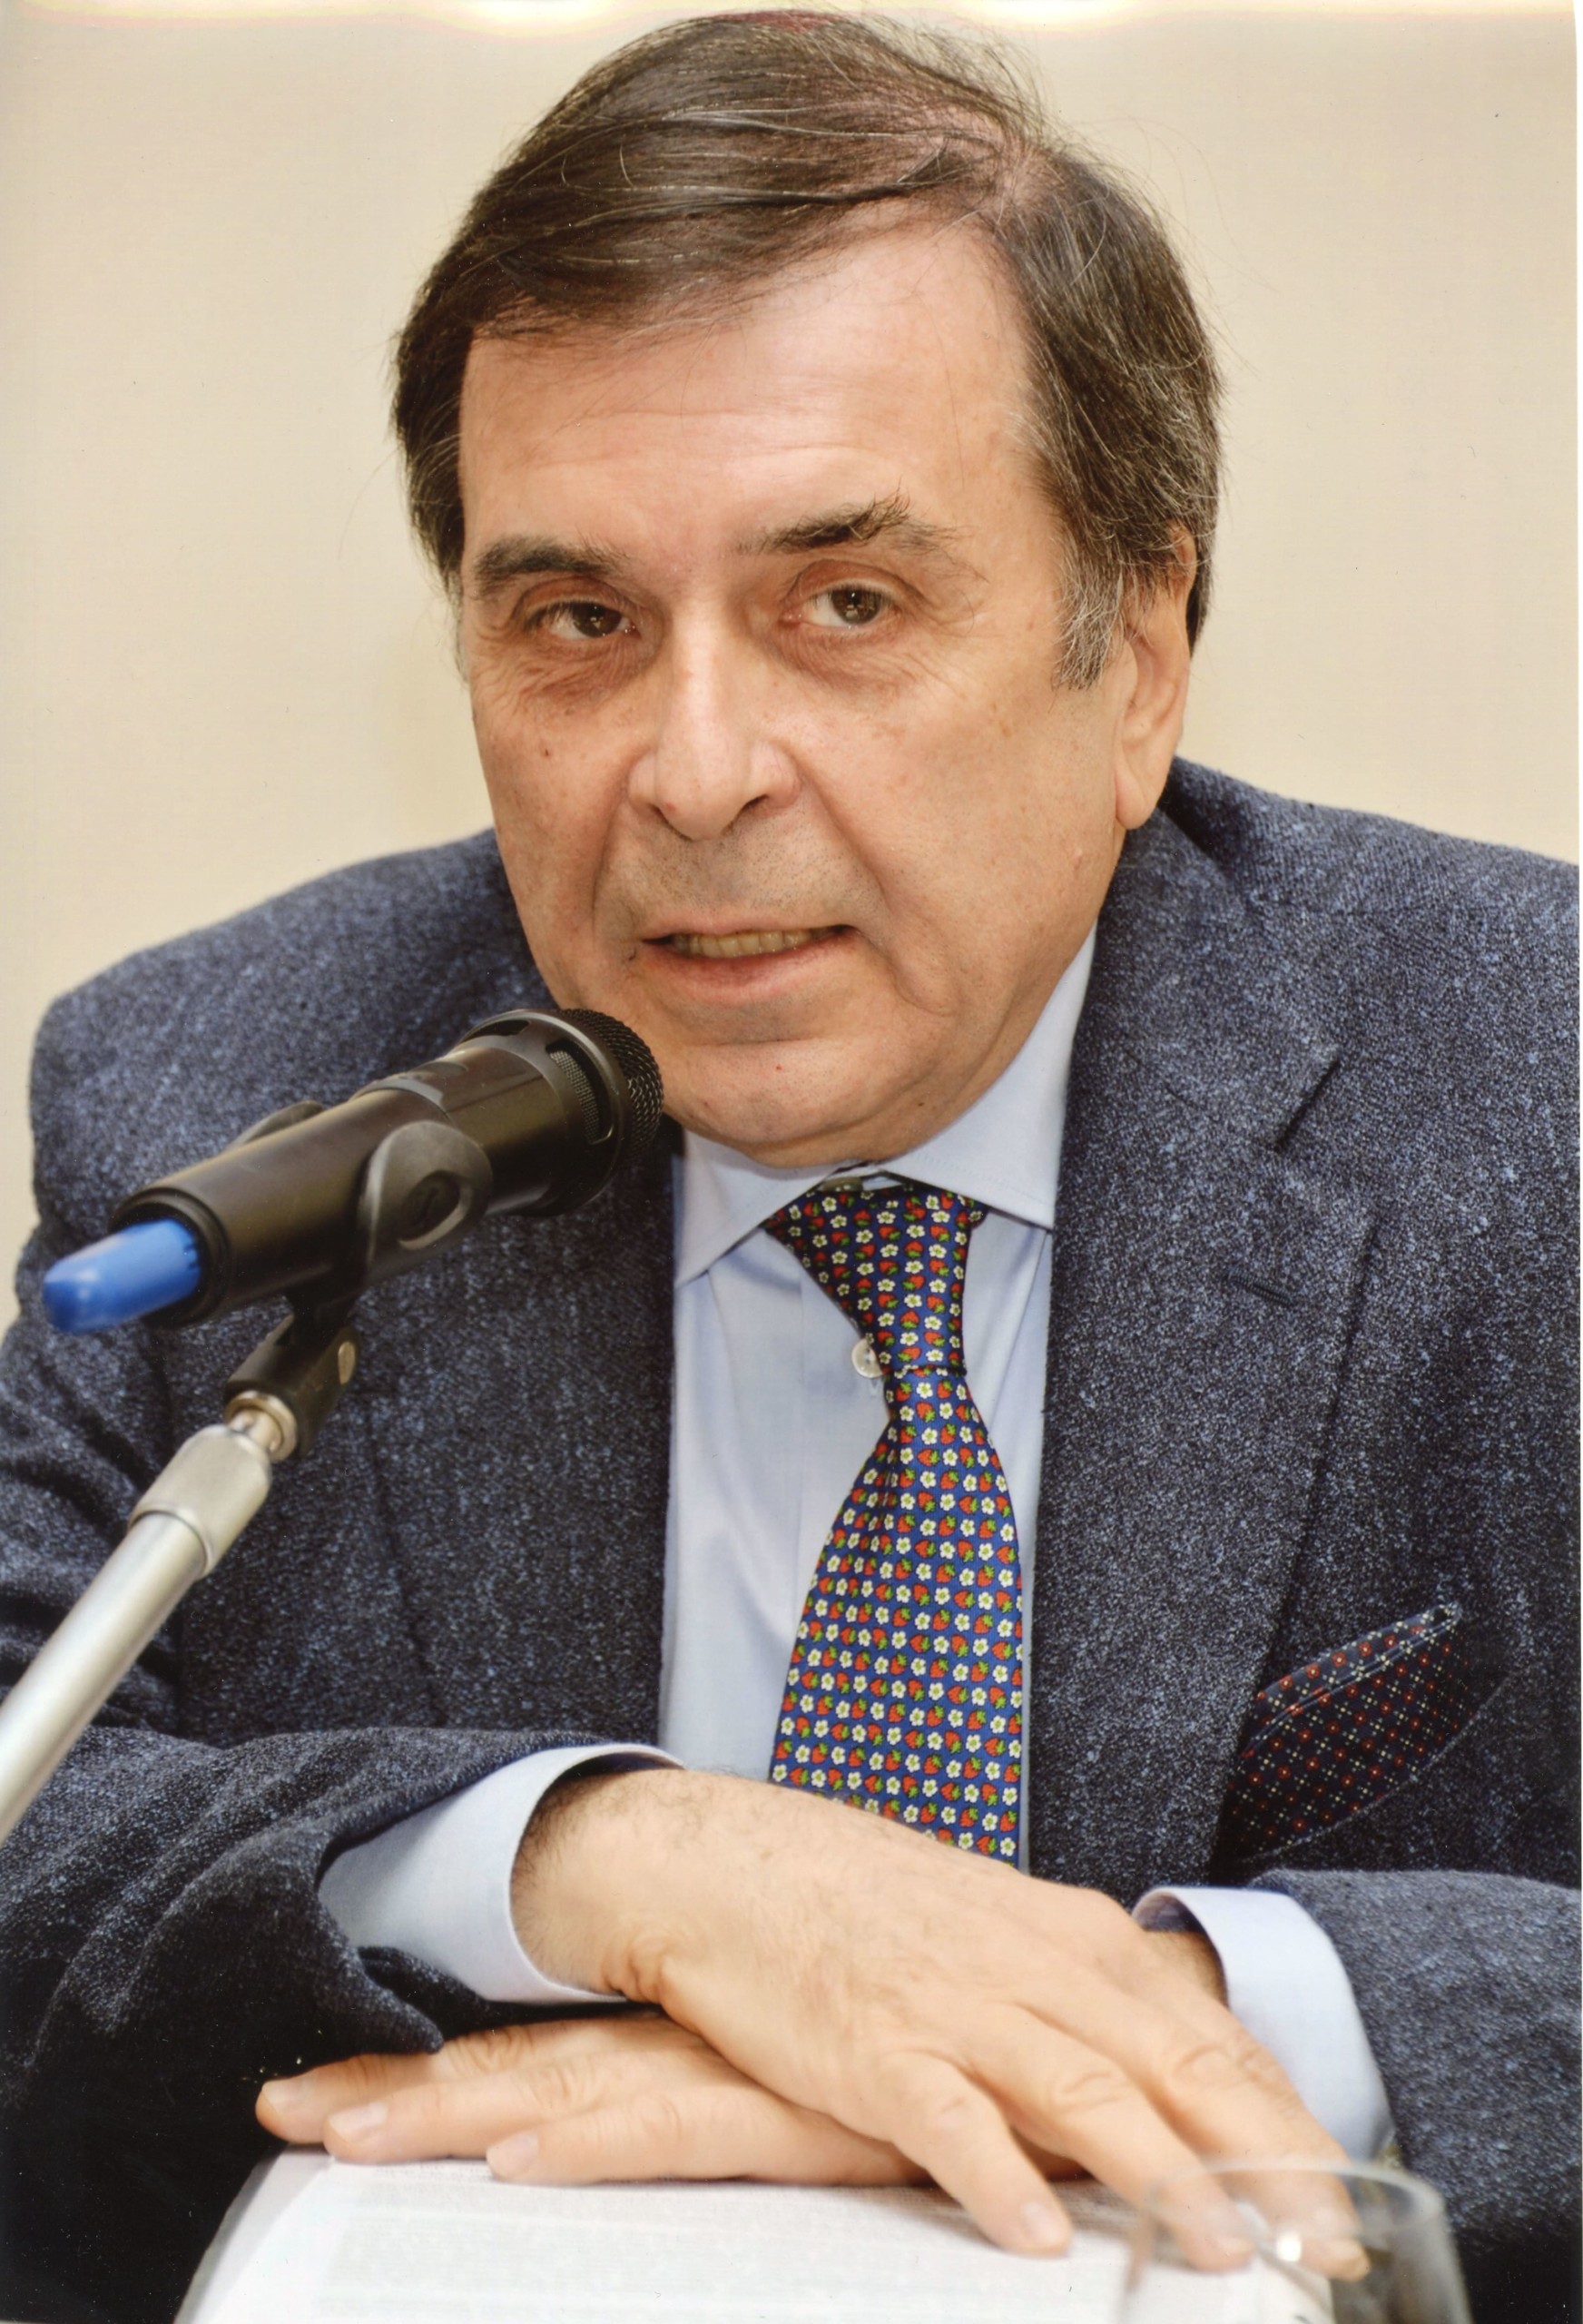 Giuseppe Franco Ferrari